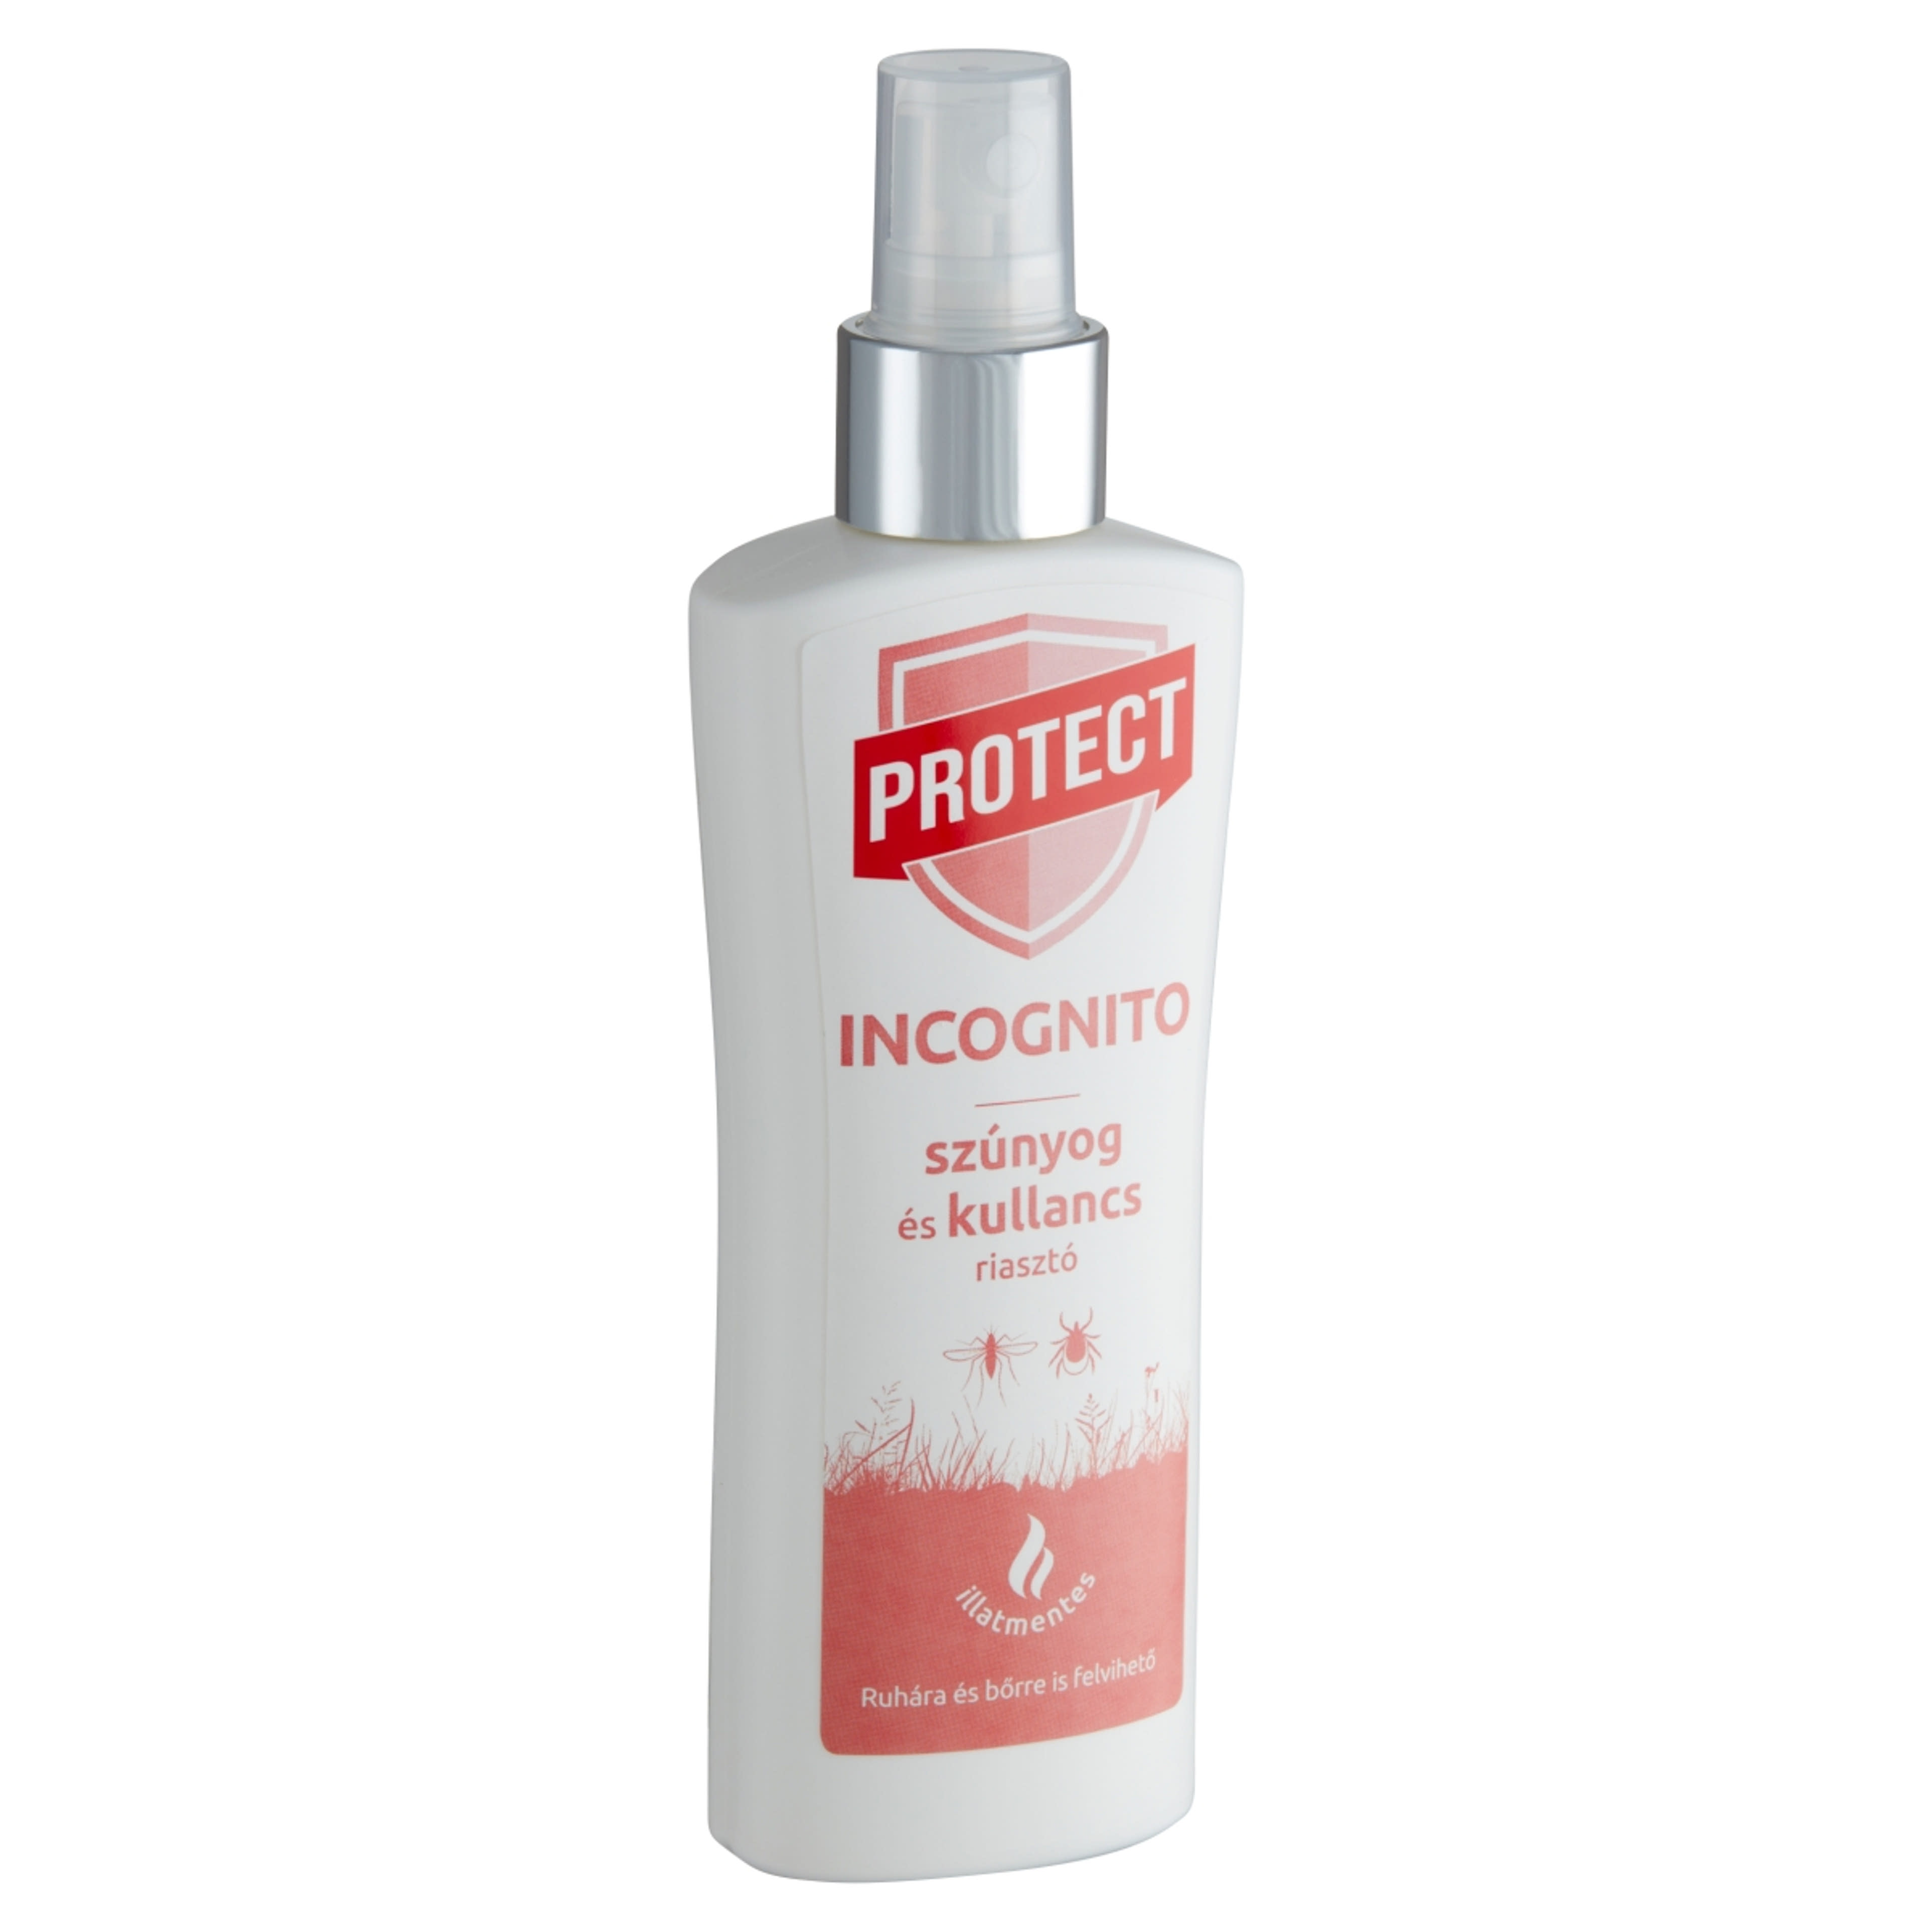 Protect incognito szúnyog és kullancsriasztó - 100 ml-2